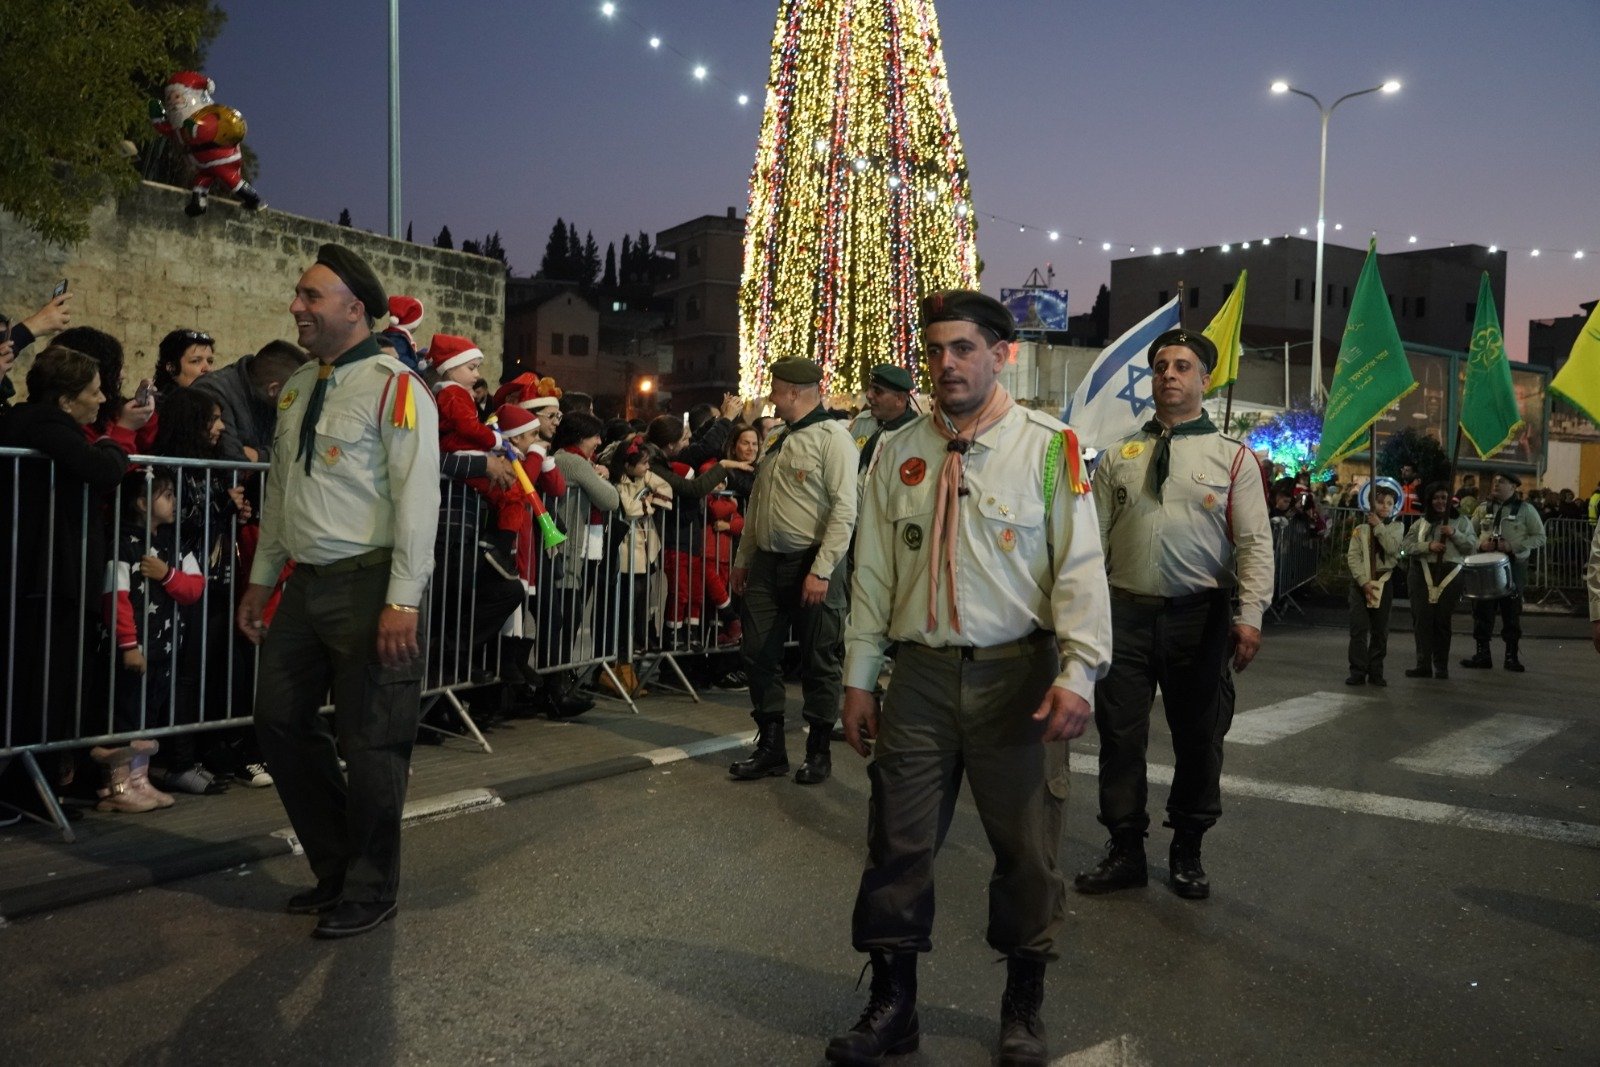 بالصور: "بكرا" يرصد فرحة استقبال الميلاد في الناصرة -64